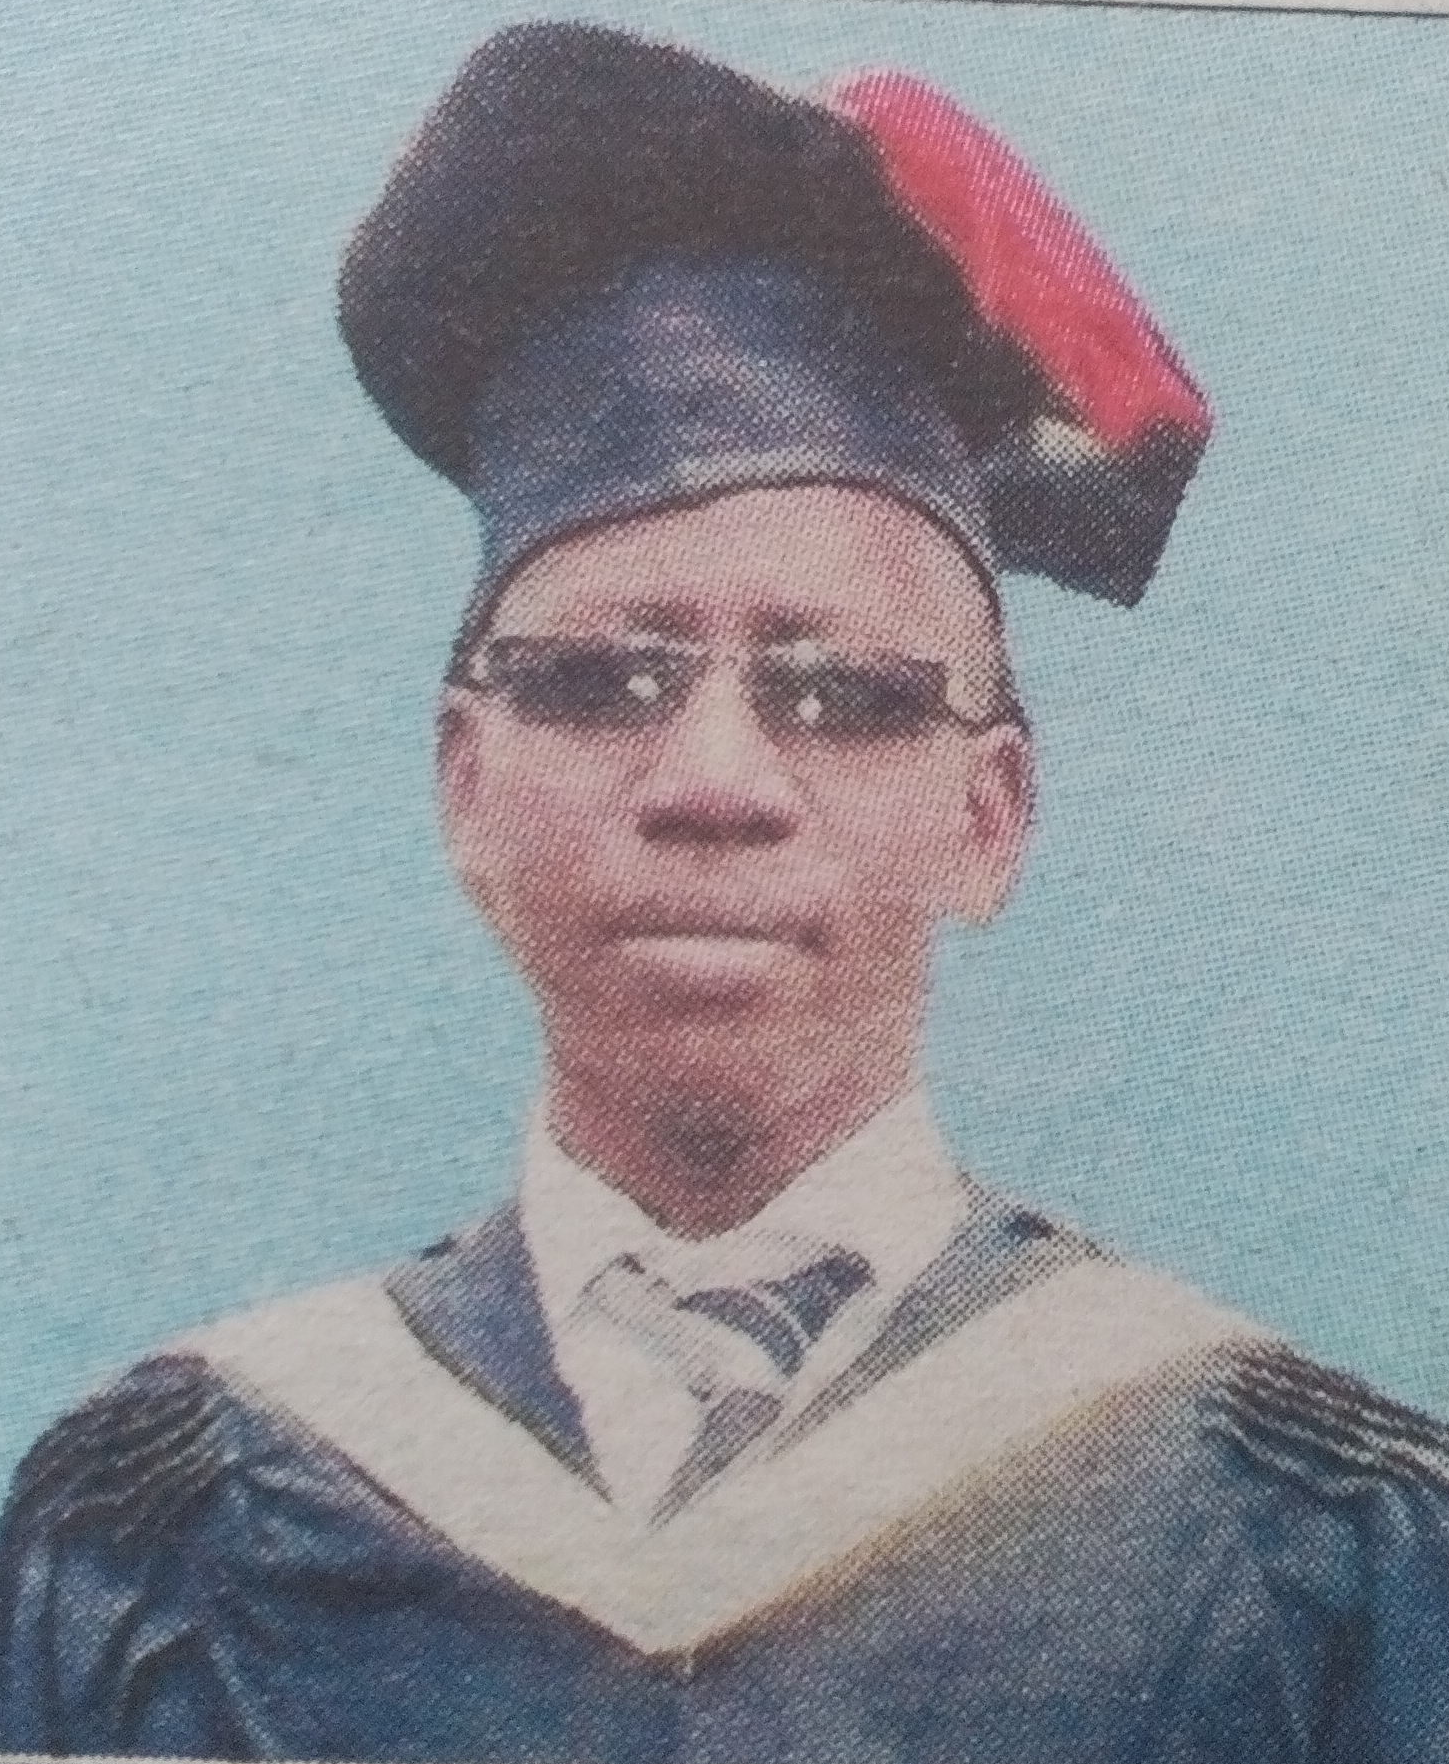 Obituary Image of Naftal Nyaribo Masese